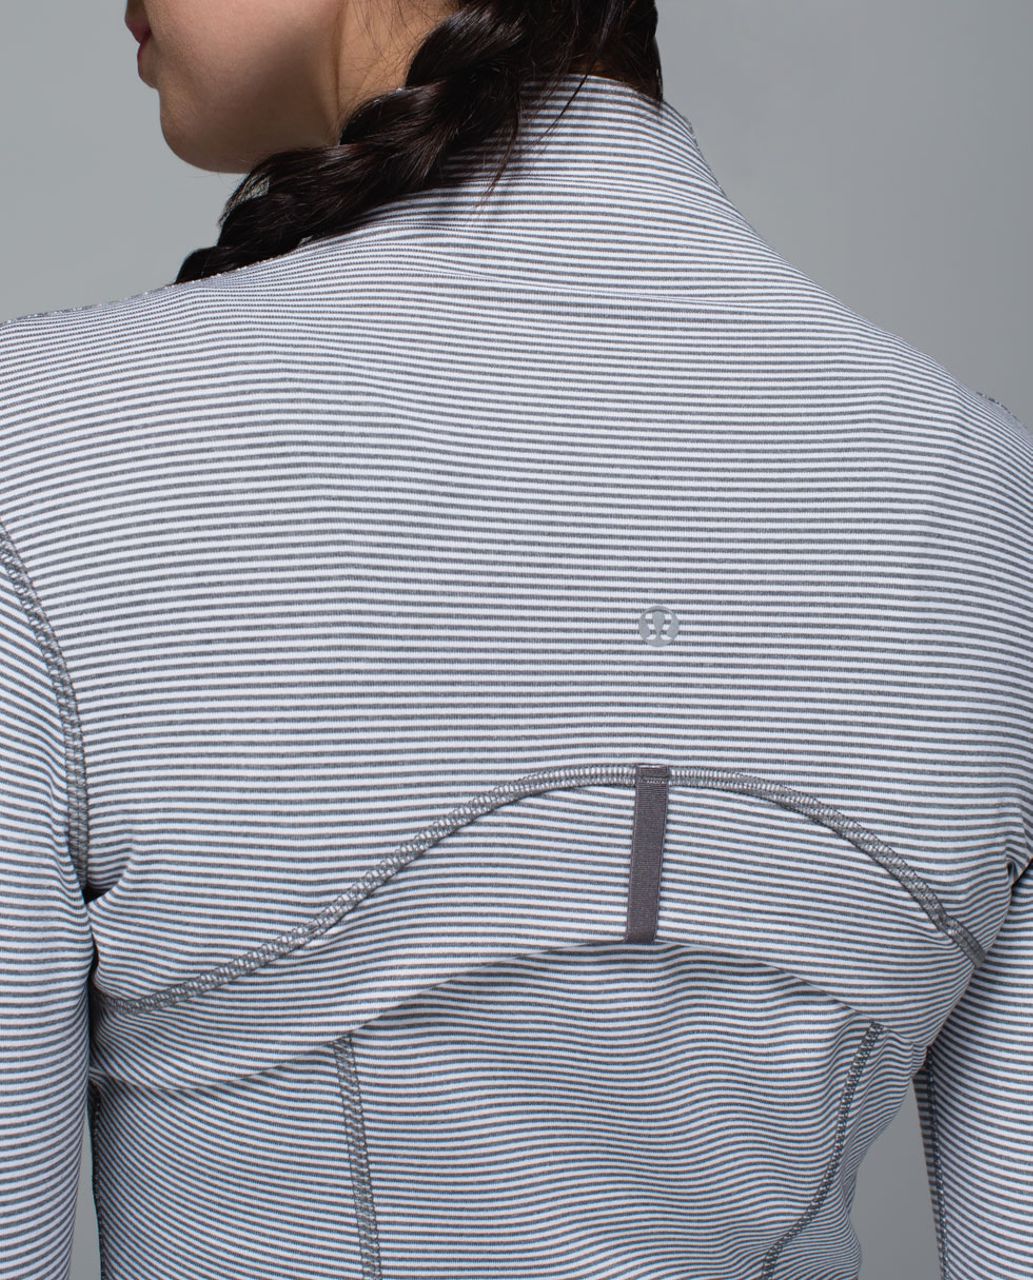 Lululemon Define Jacket - Tonka Stripe Heathered Slate White